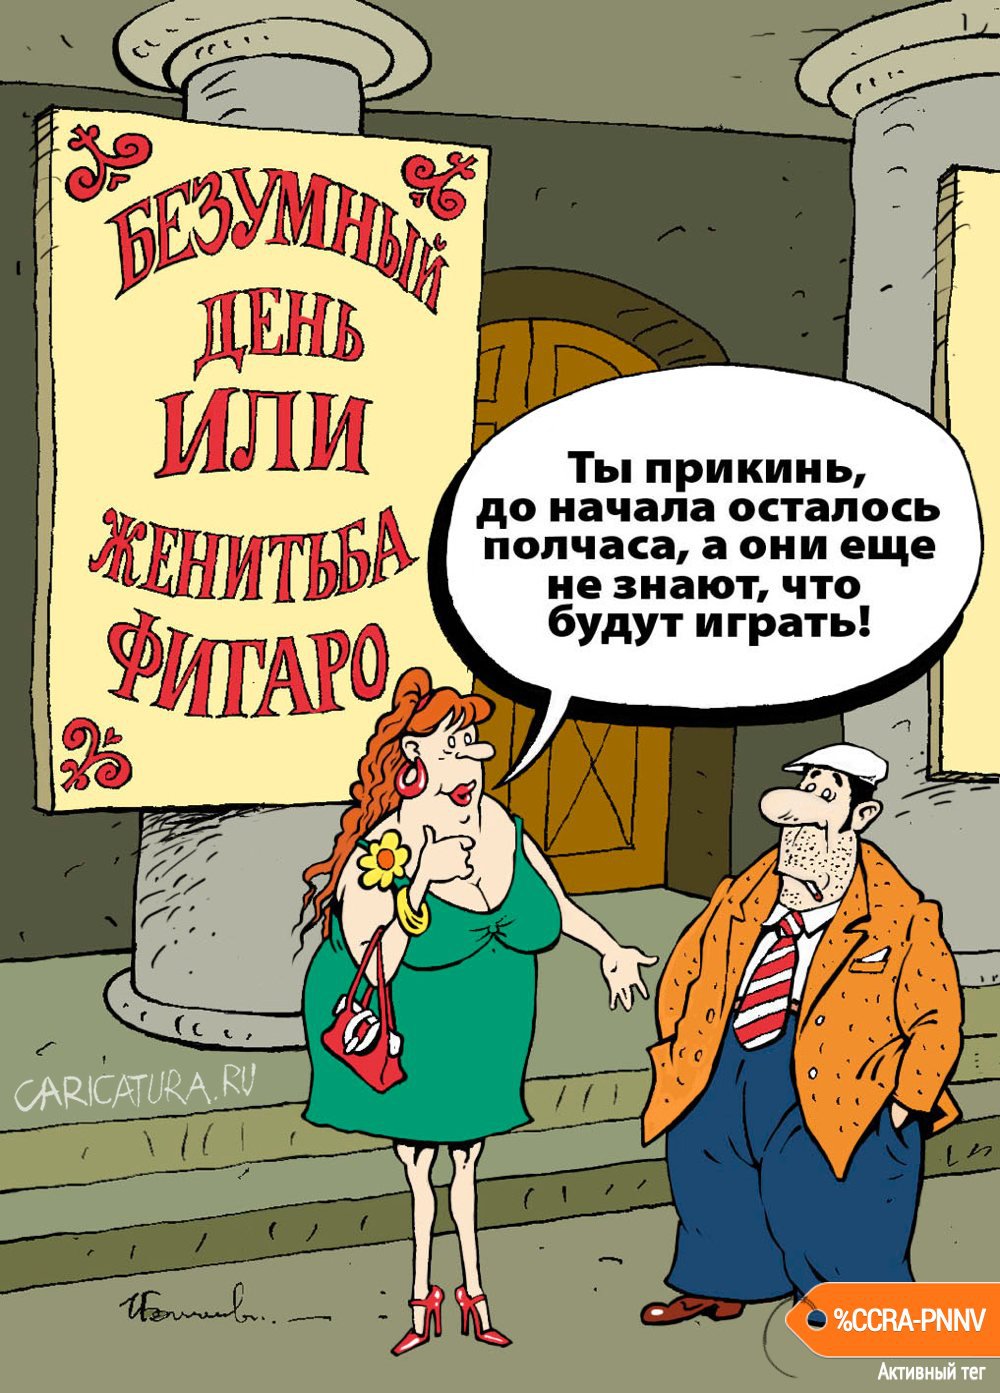 Карикатура "Фигаро", Игорь Елистратов